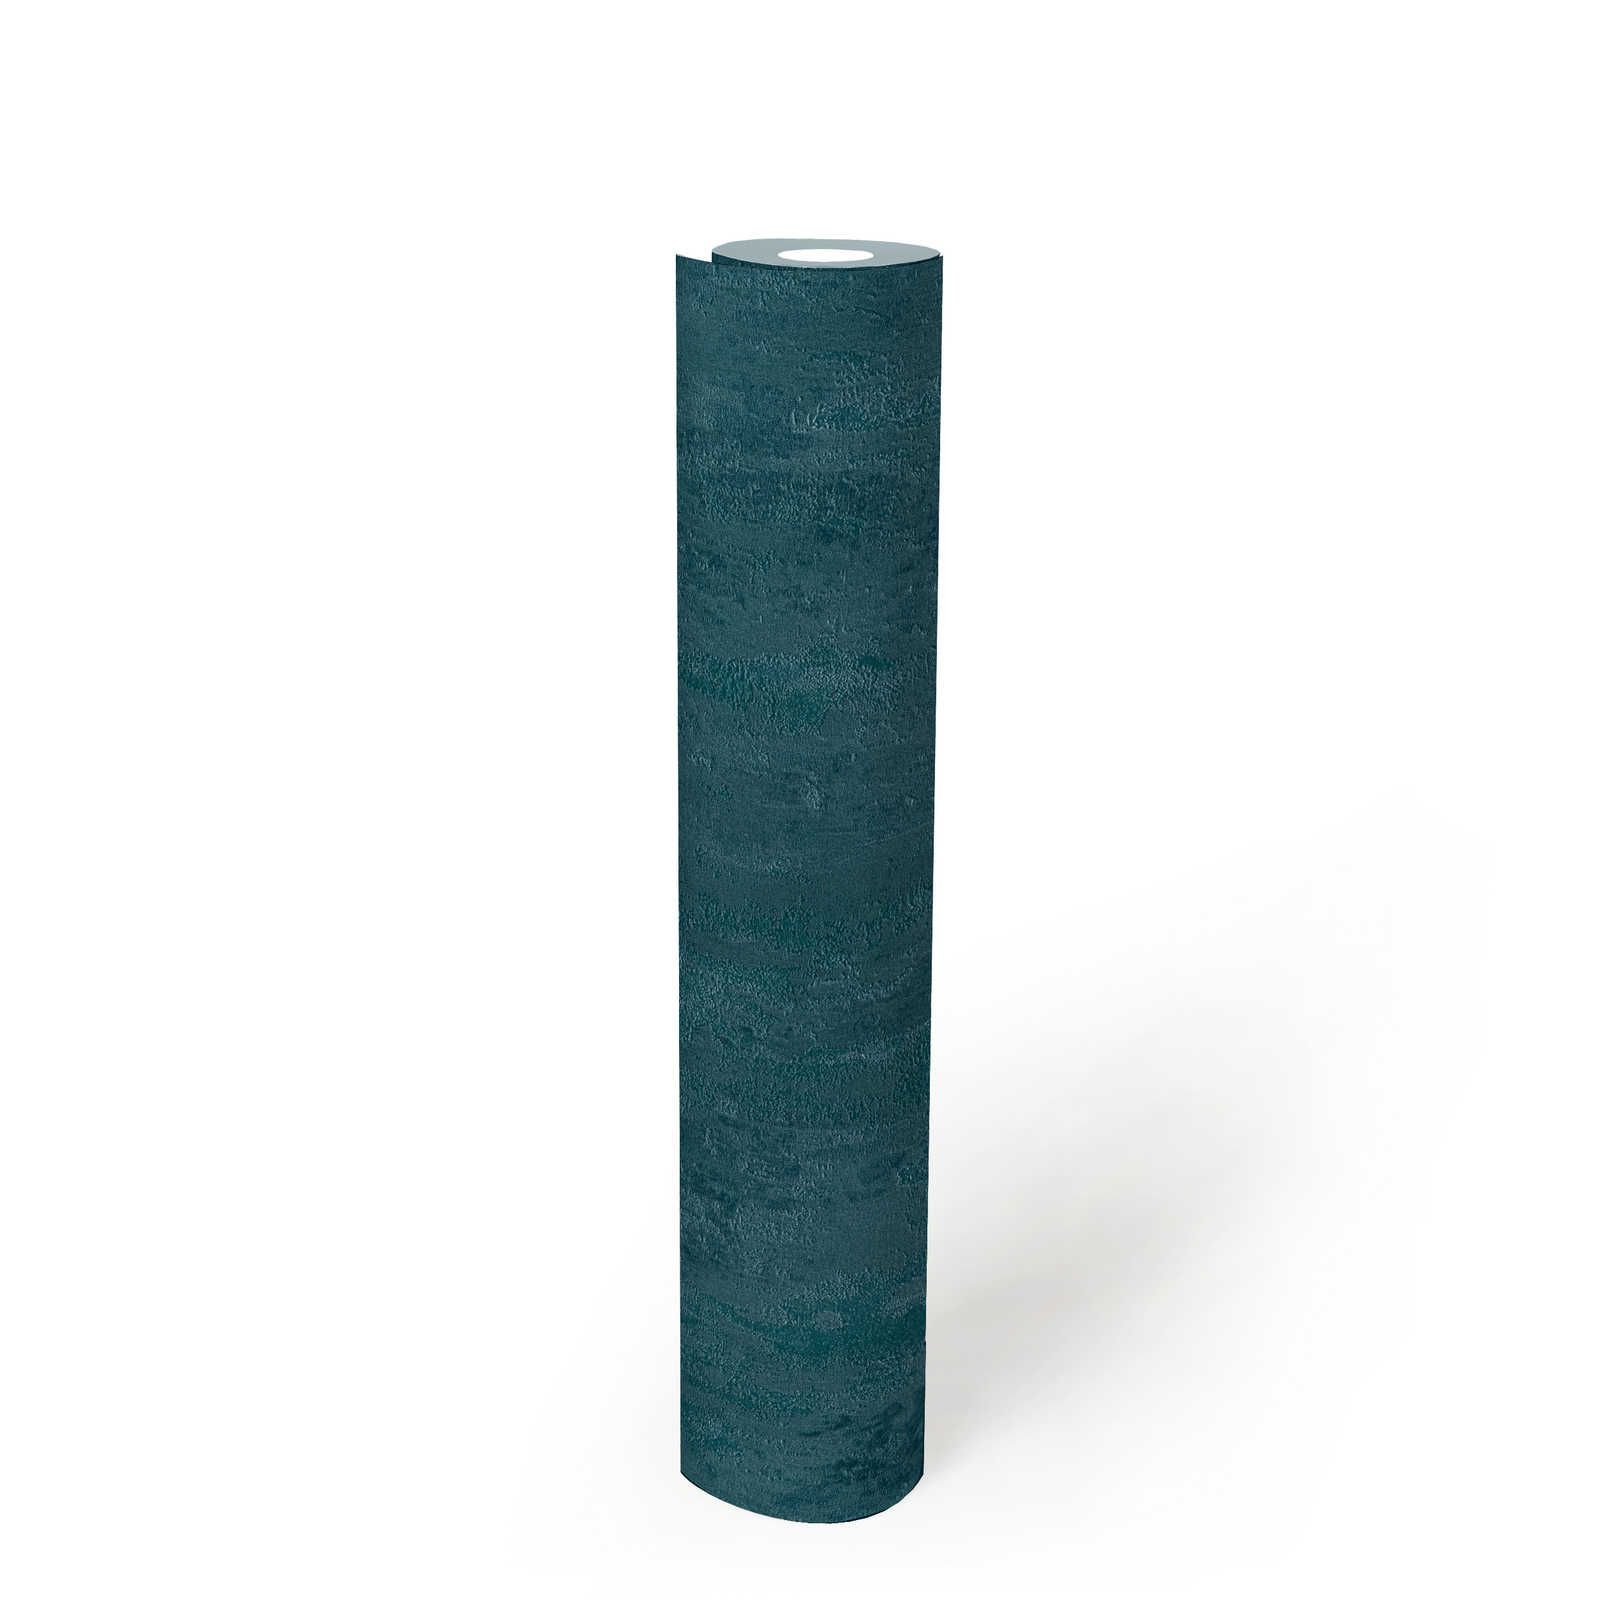             Papier peint style industriel avec effet structuré - bleu, métallique
        